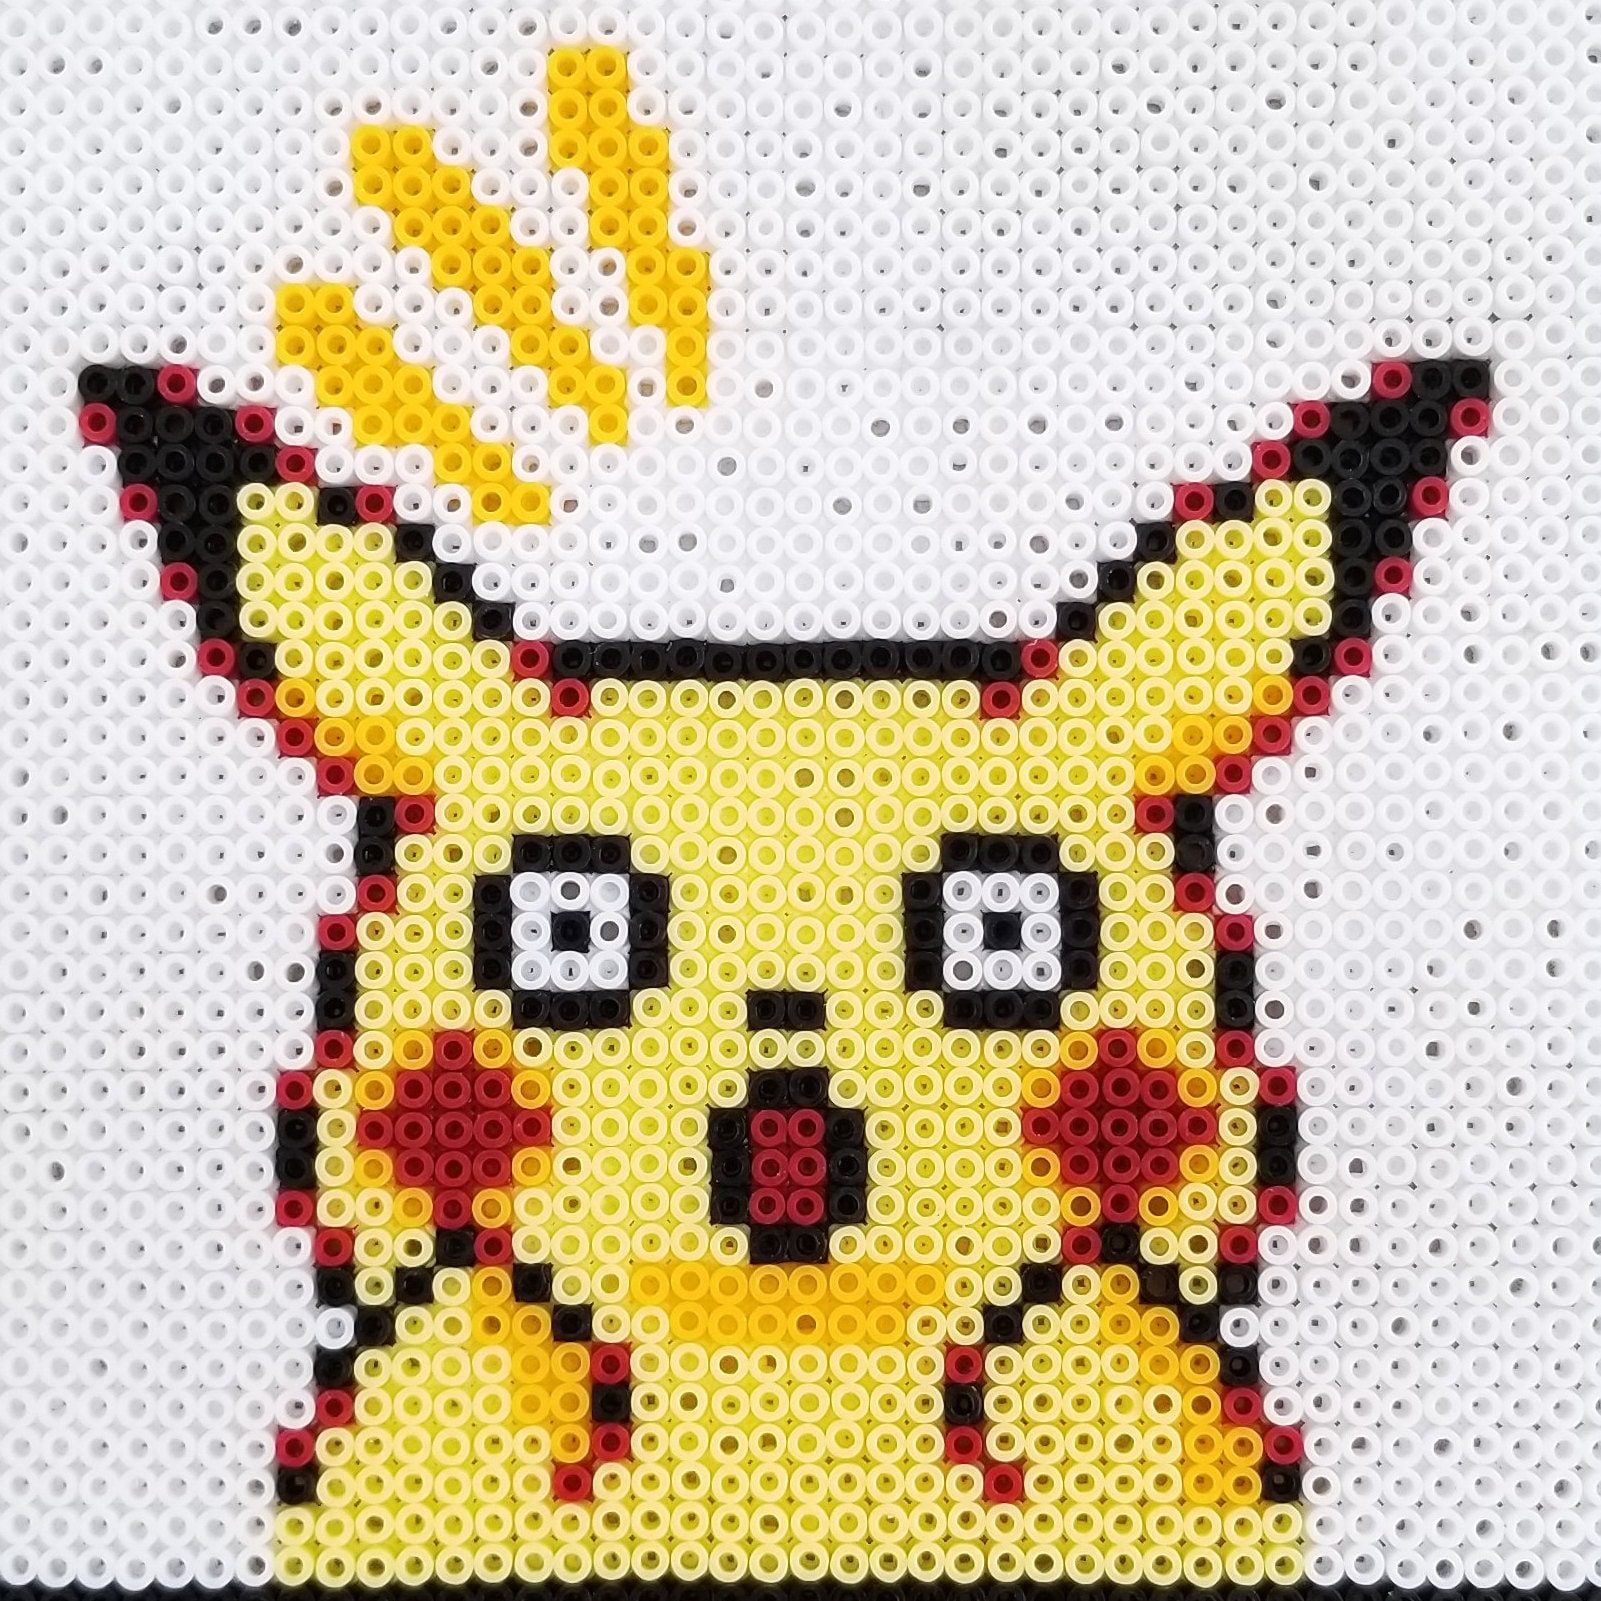 Quadro Decorativo Desenho Pikachu 3 Peças em Promoção na Americanas